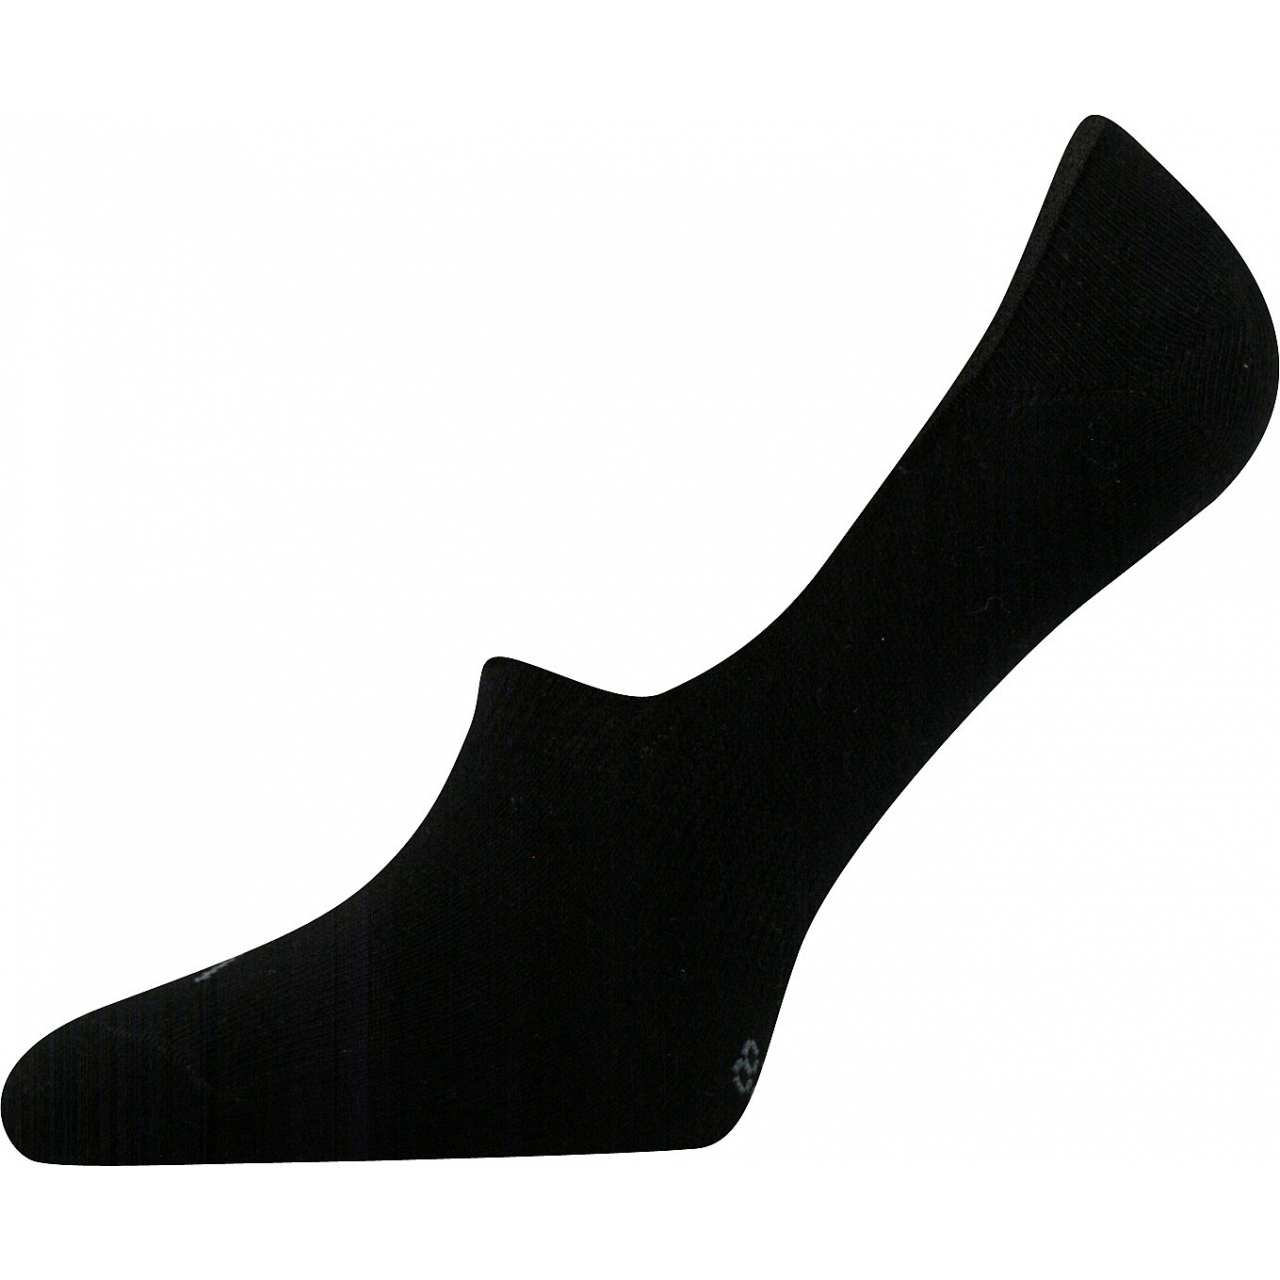 Ponožky unisex Voxx Verti - černé, 39-42